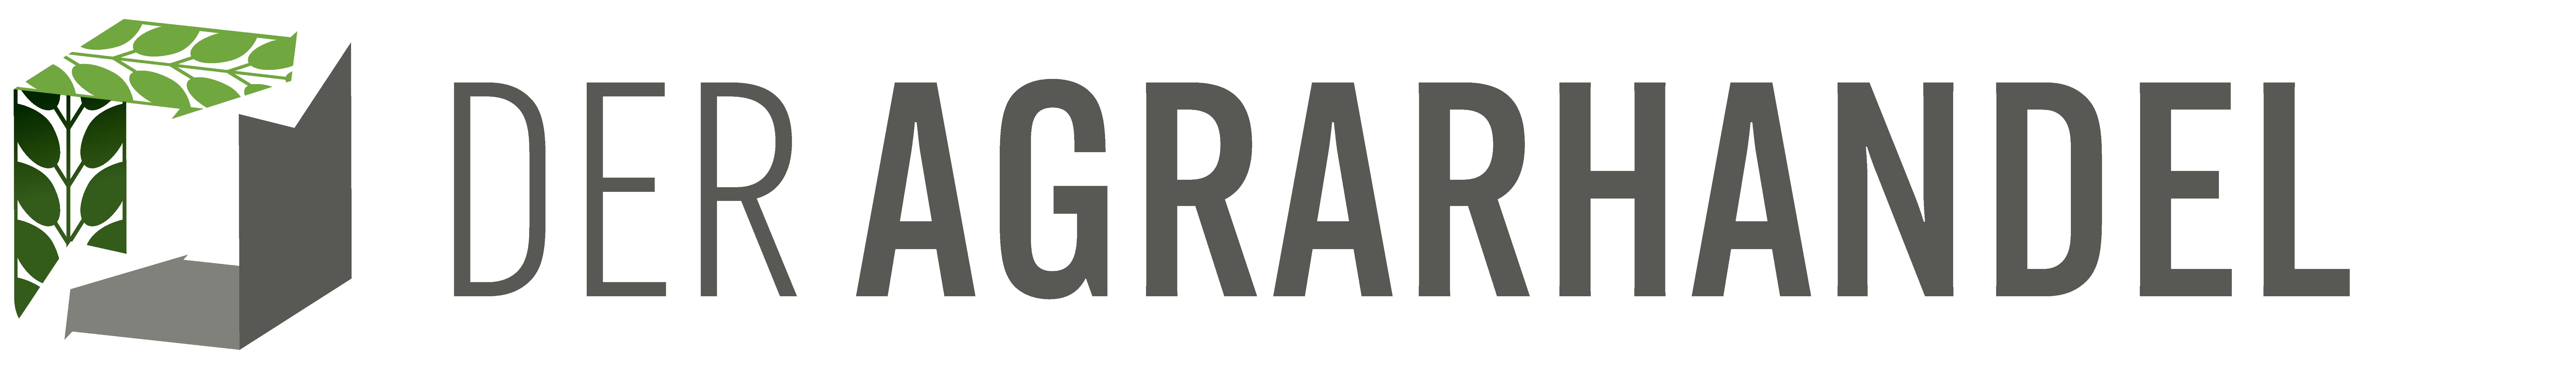 Logo DER AGRARHANDEL - Bundesverband Agrarhandel und Verein der Getreidehändler der Hamburger Börse e.V.